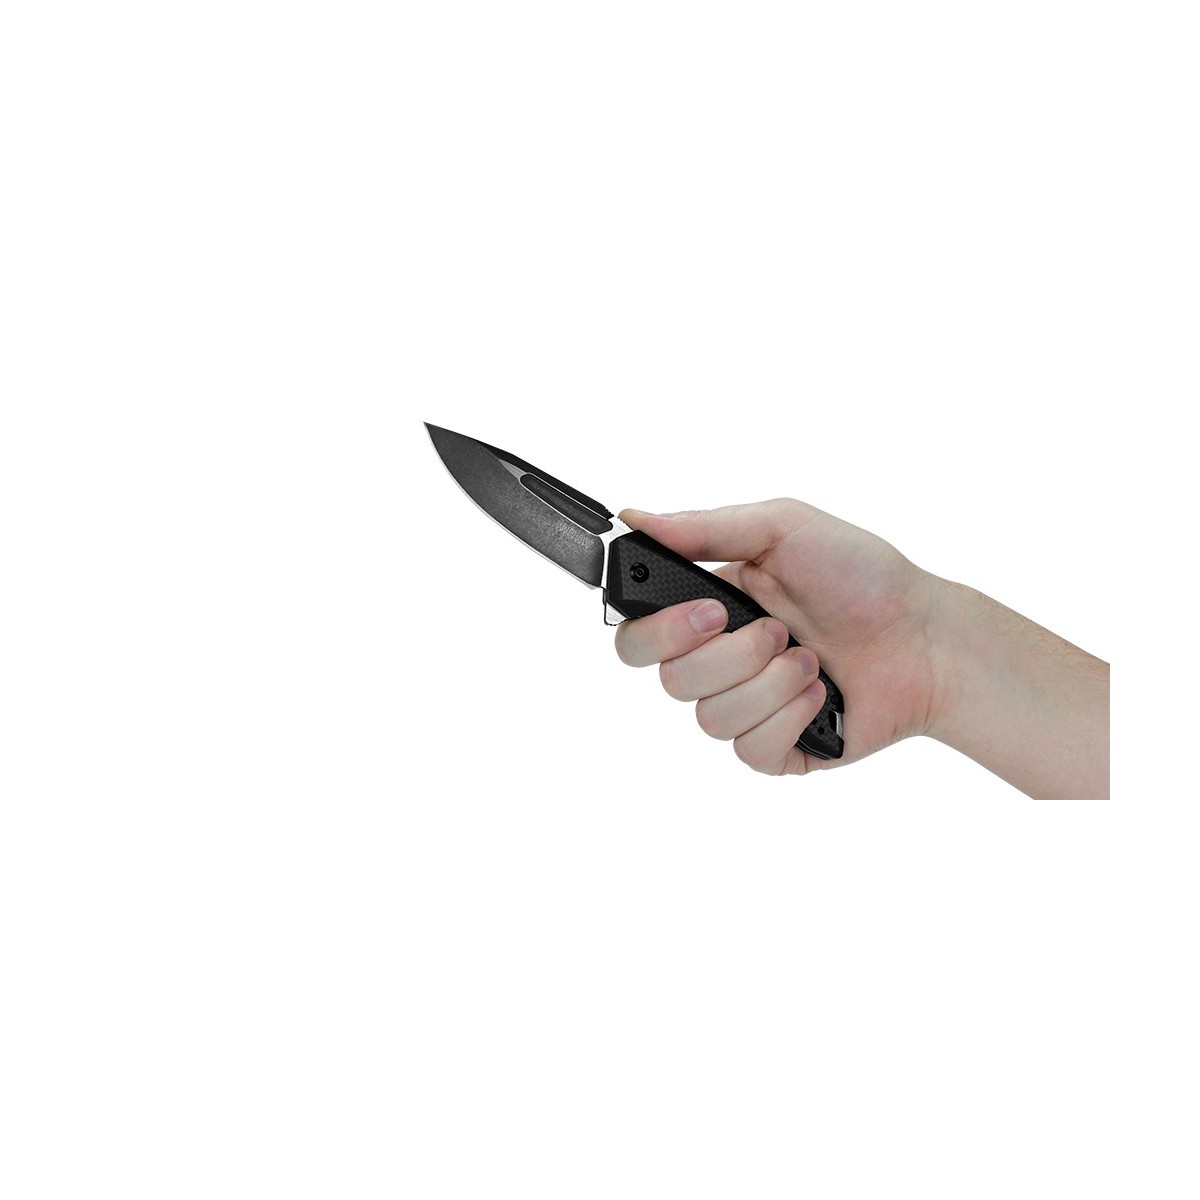 มีดพับ Kershaw Flourish Assisted Opening Knife Carbon Fiber/G-10 (3.5" BlackWash) 3935